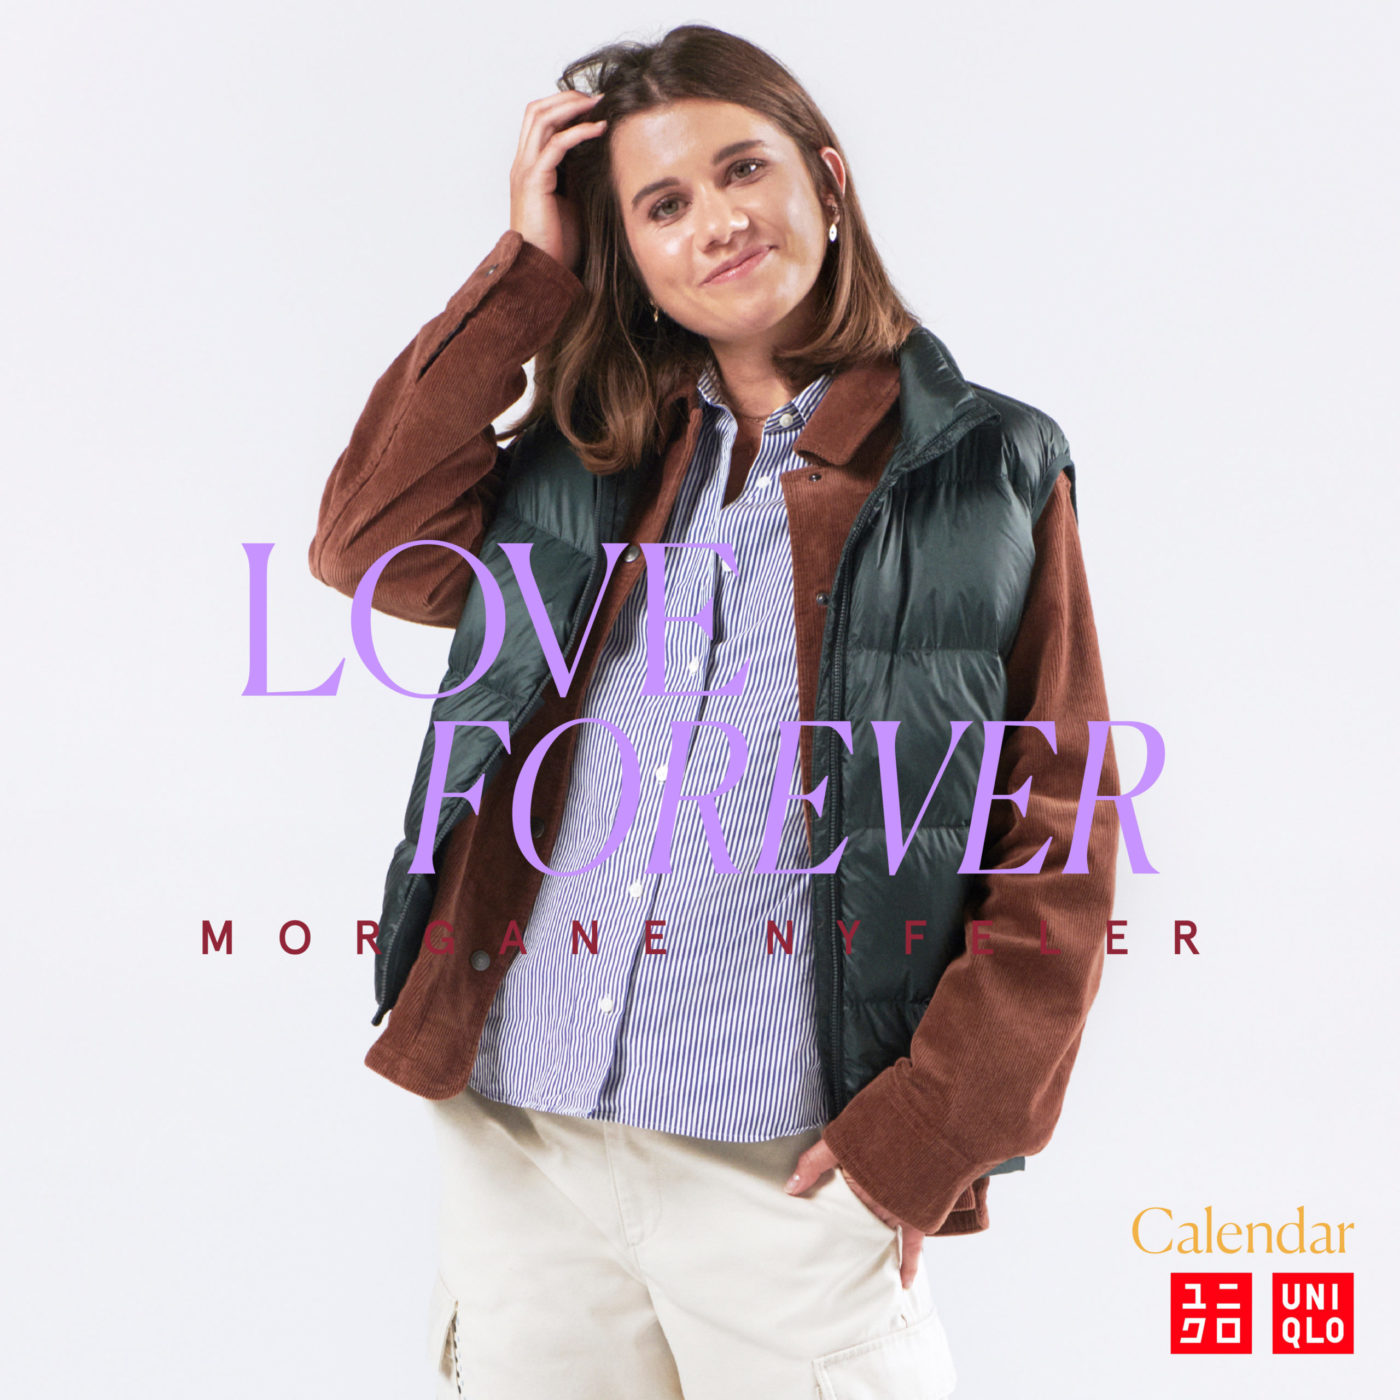 Love Forever: Morgane Nyfeler